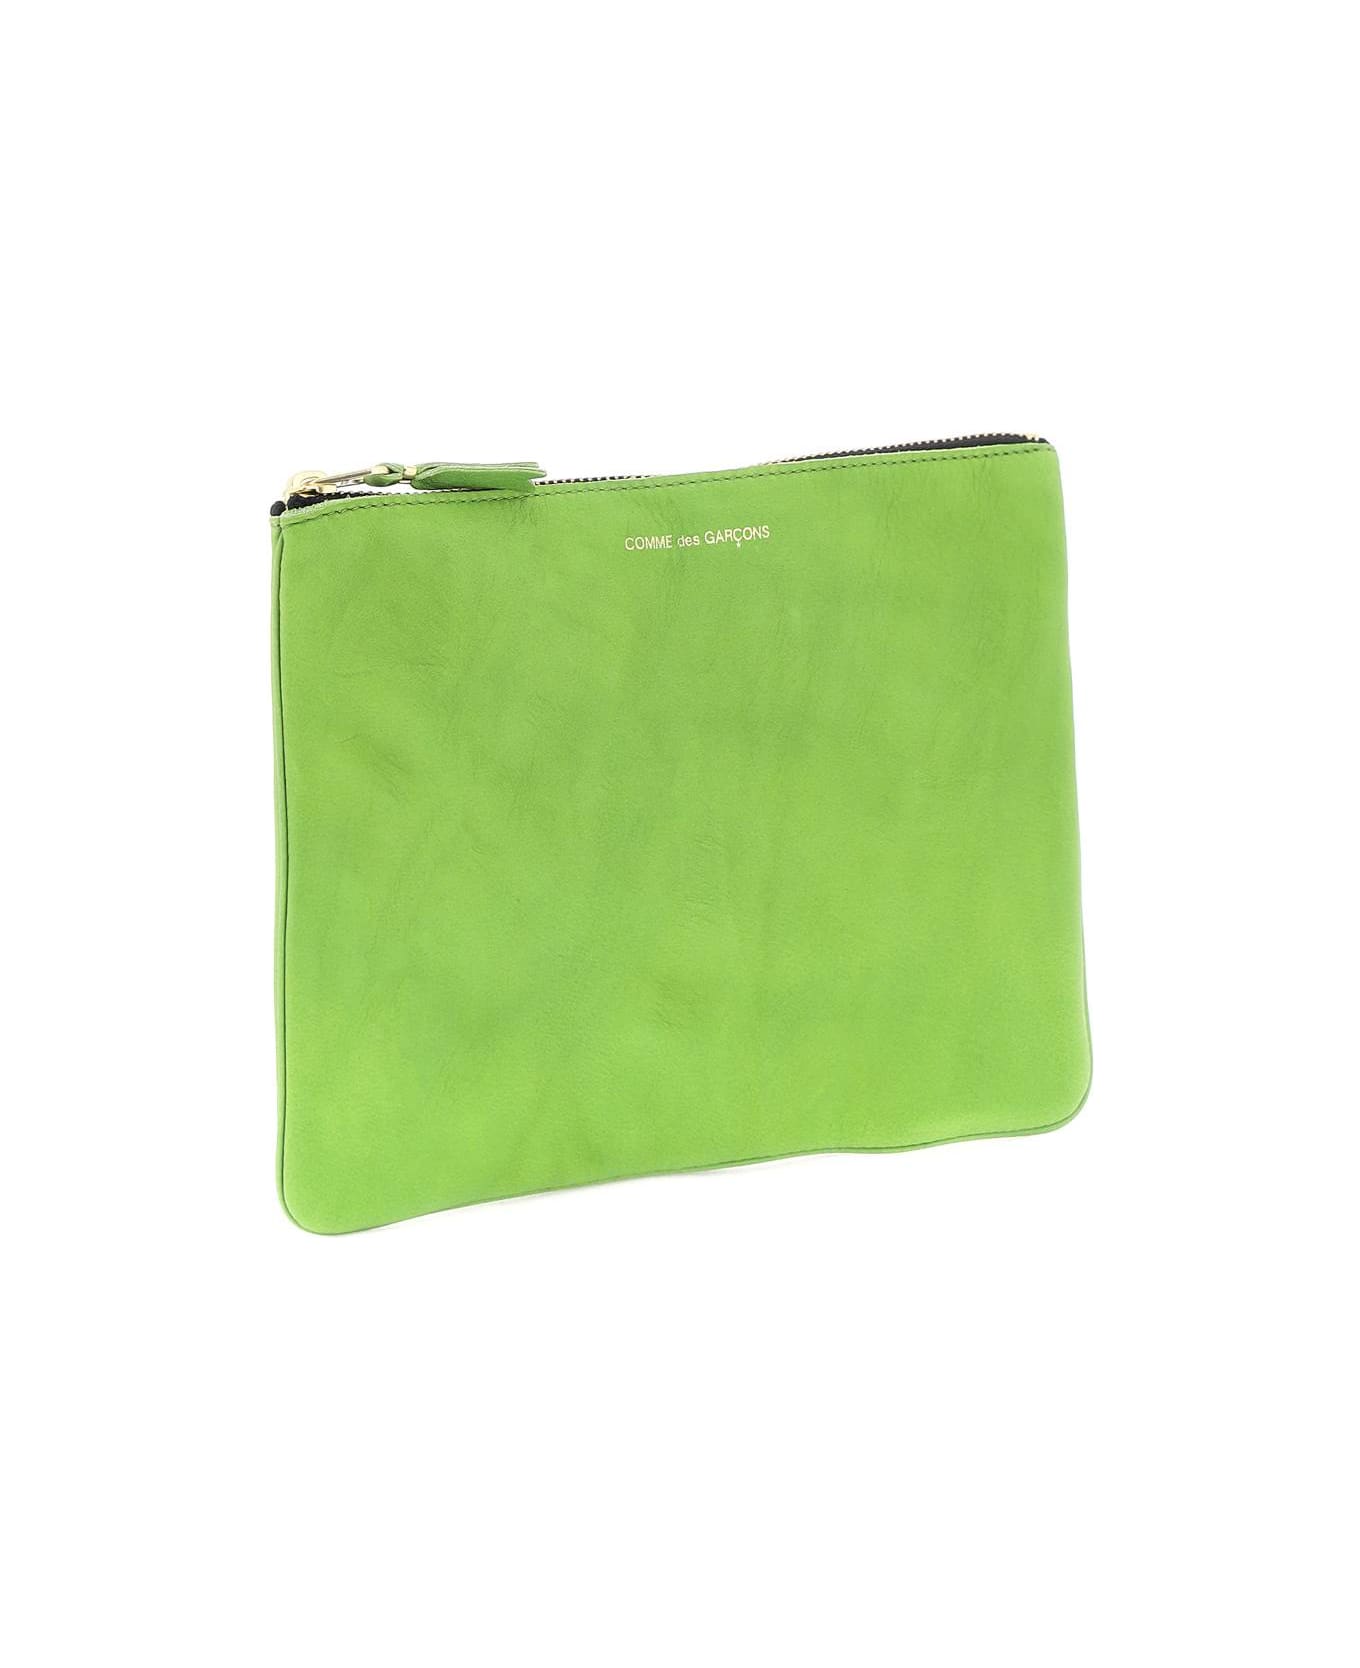 Comme des Garçons Wallet Classic Pouch - GREEN (Green)